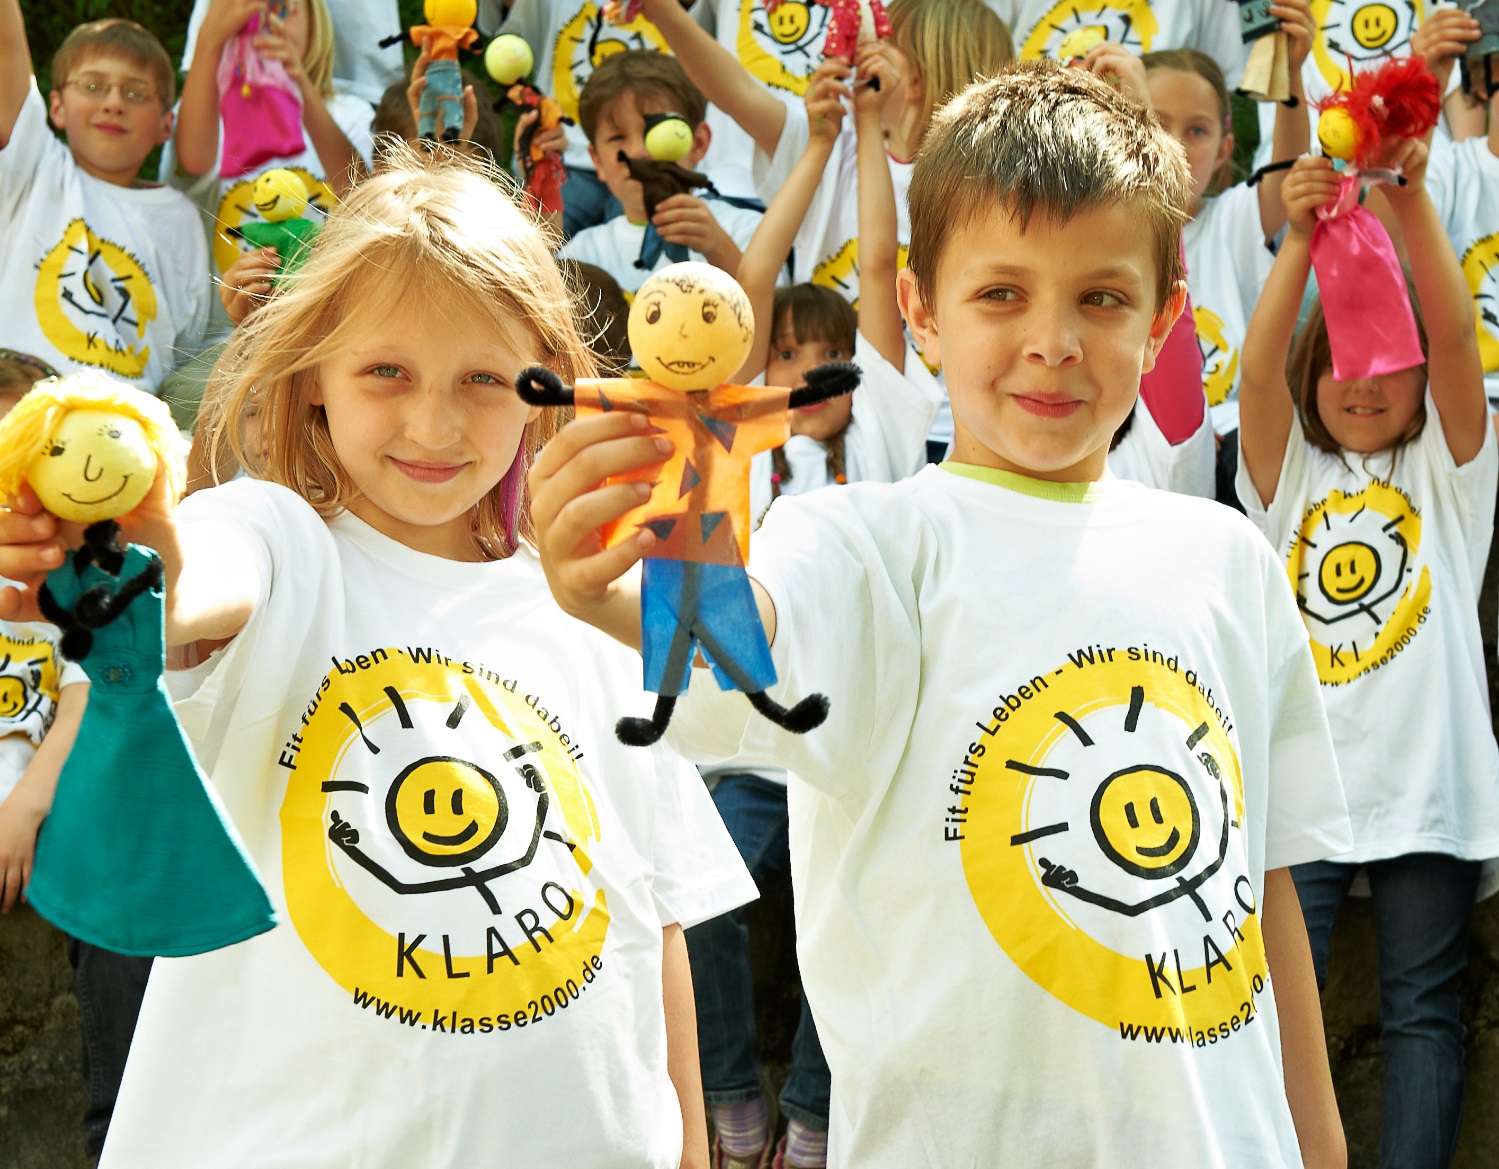 lachende Kinder - tragen das Logo "KLARO" auf dem T-Shirt